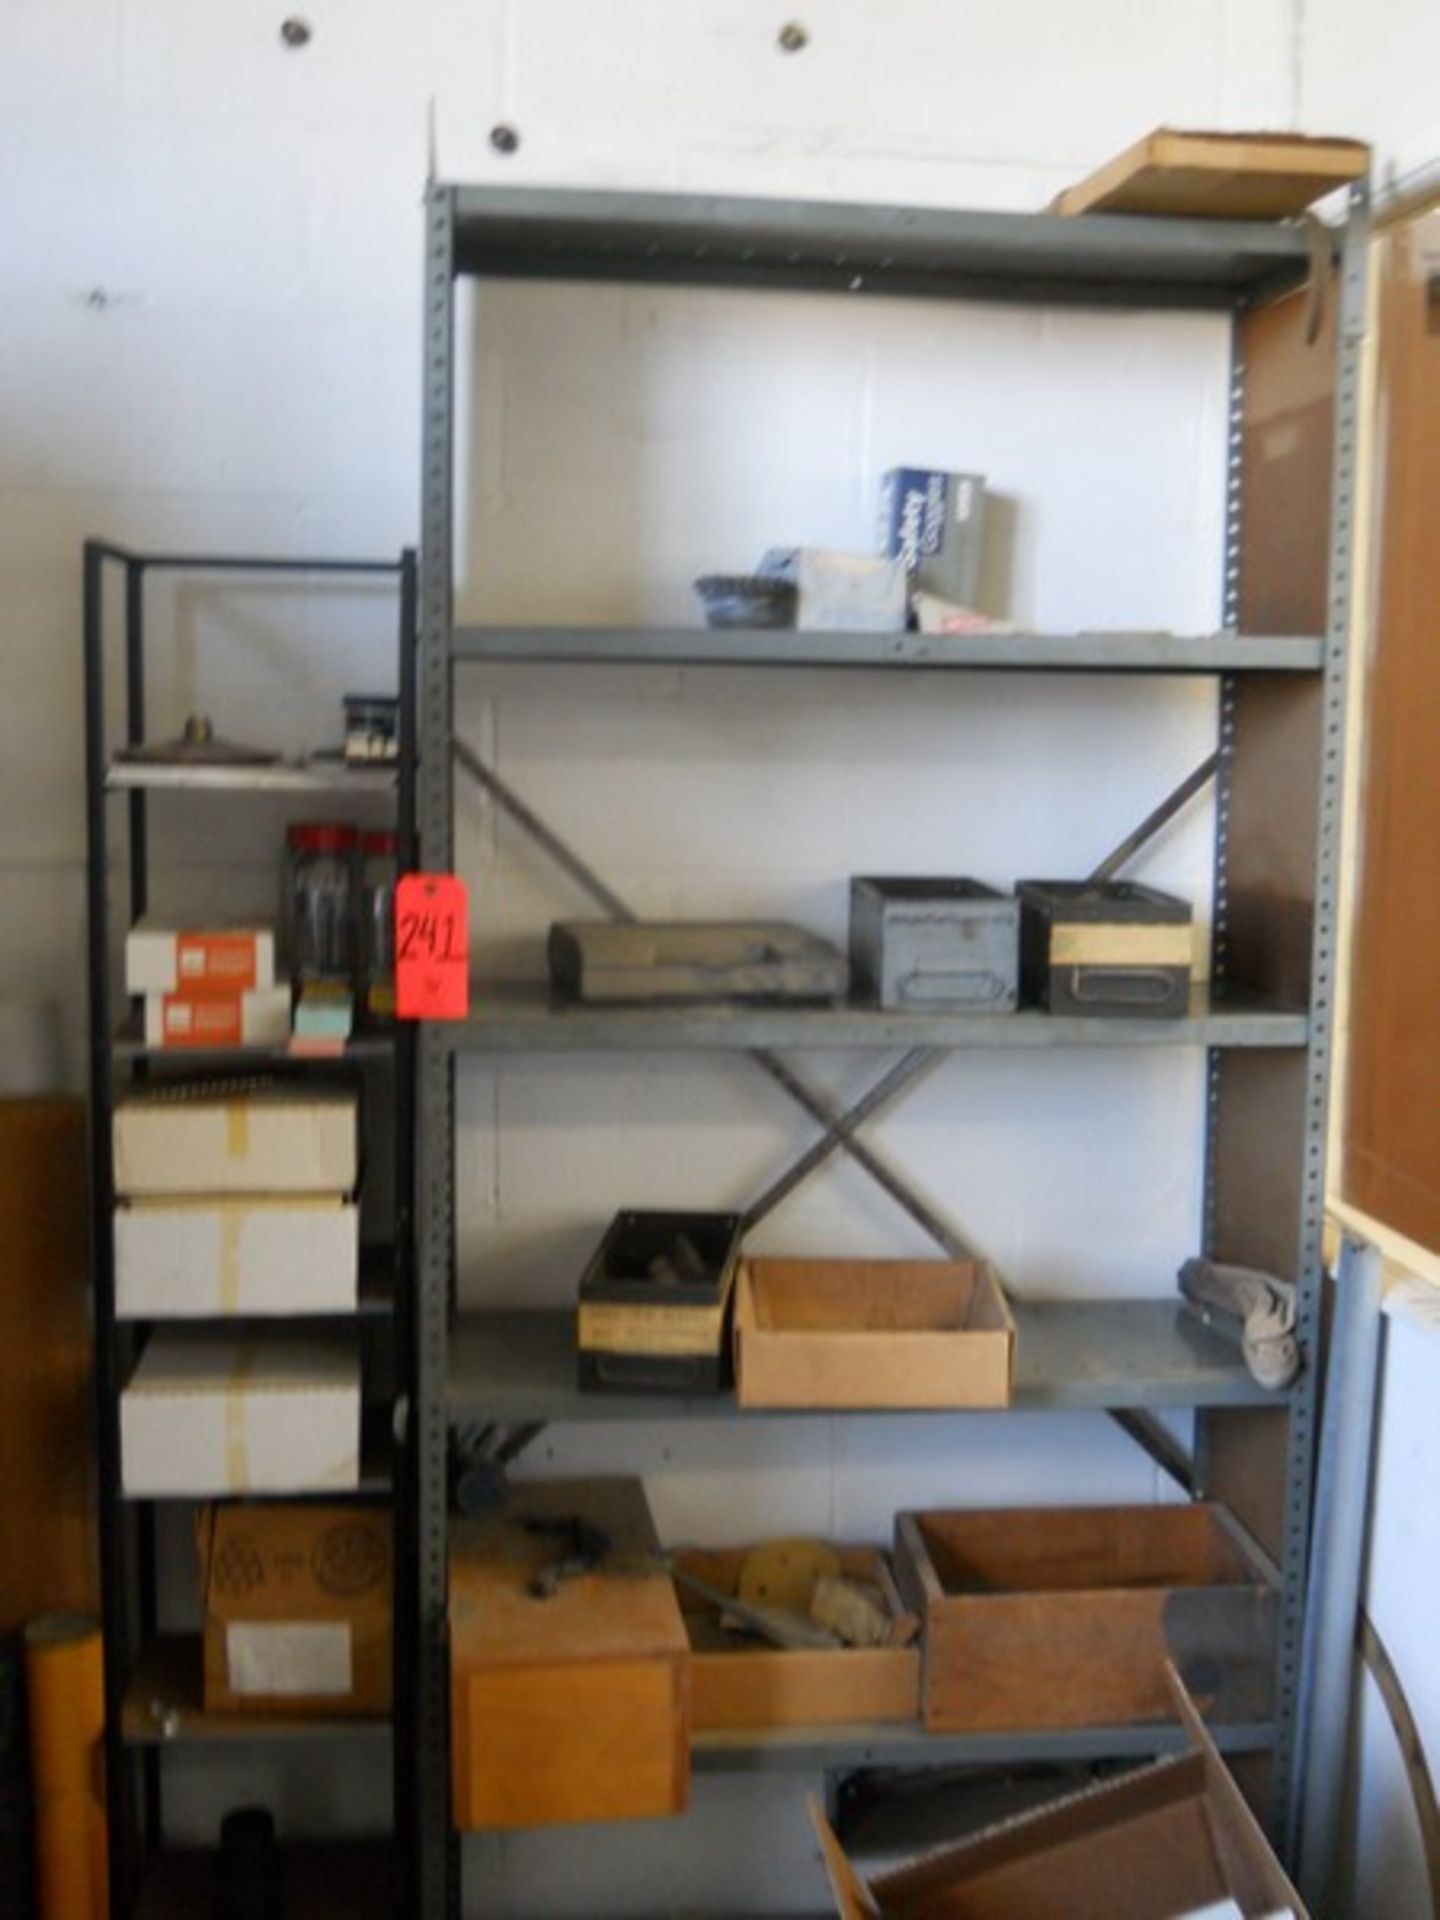 Lot - Shop Shelf Unit & Contents - Image 2 of 4